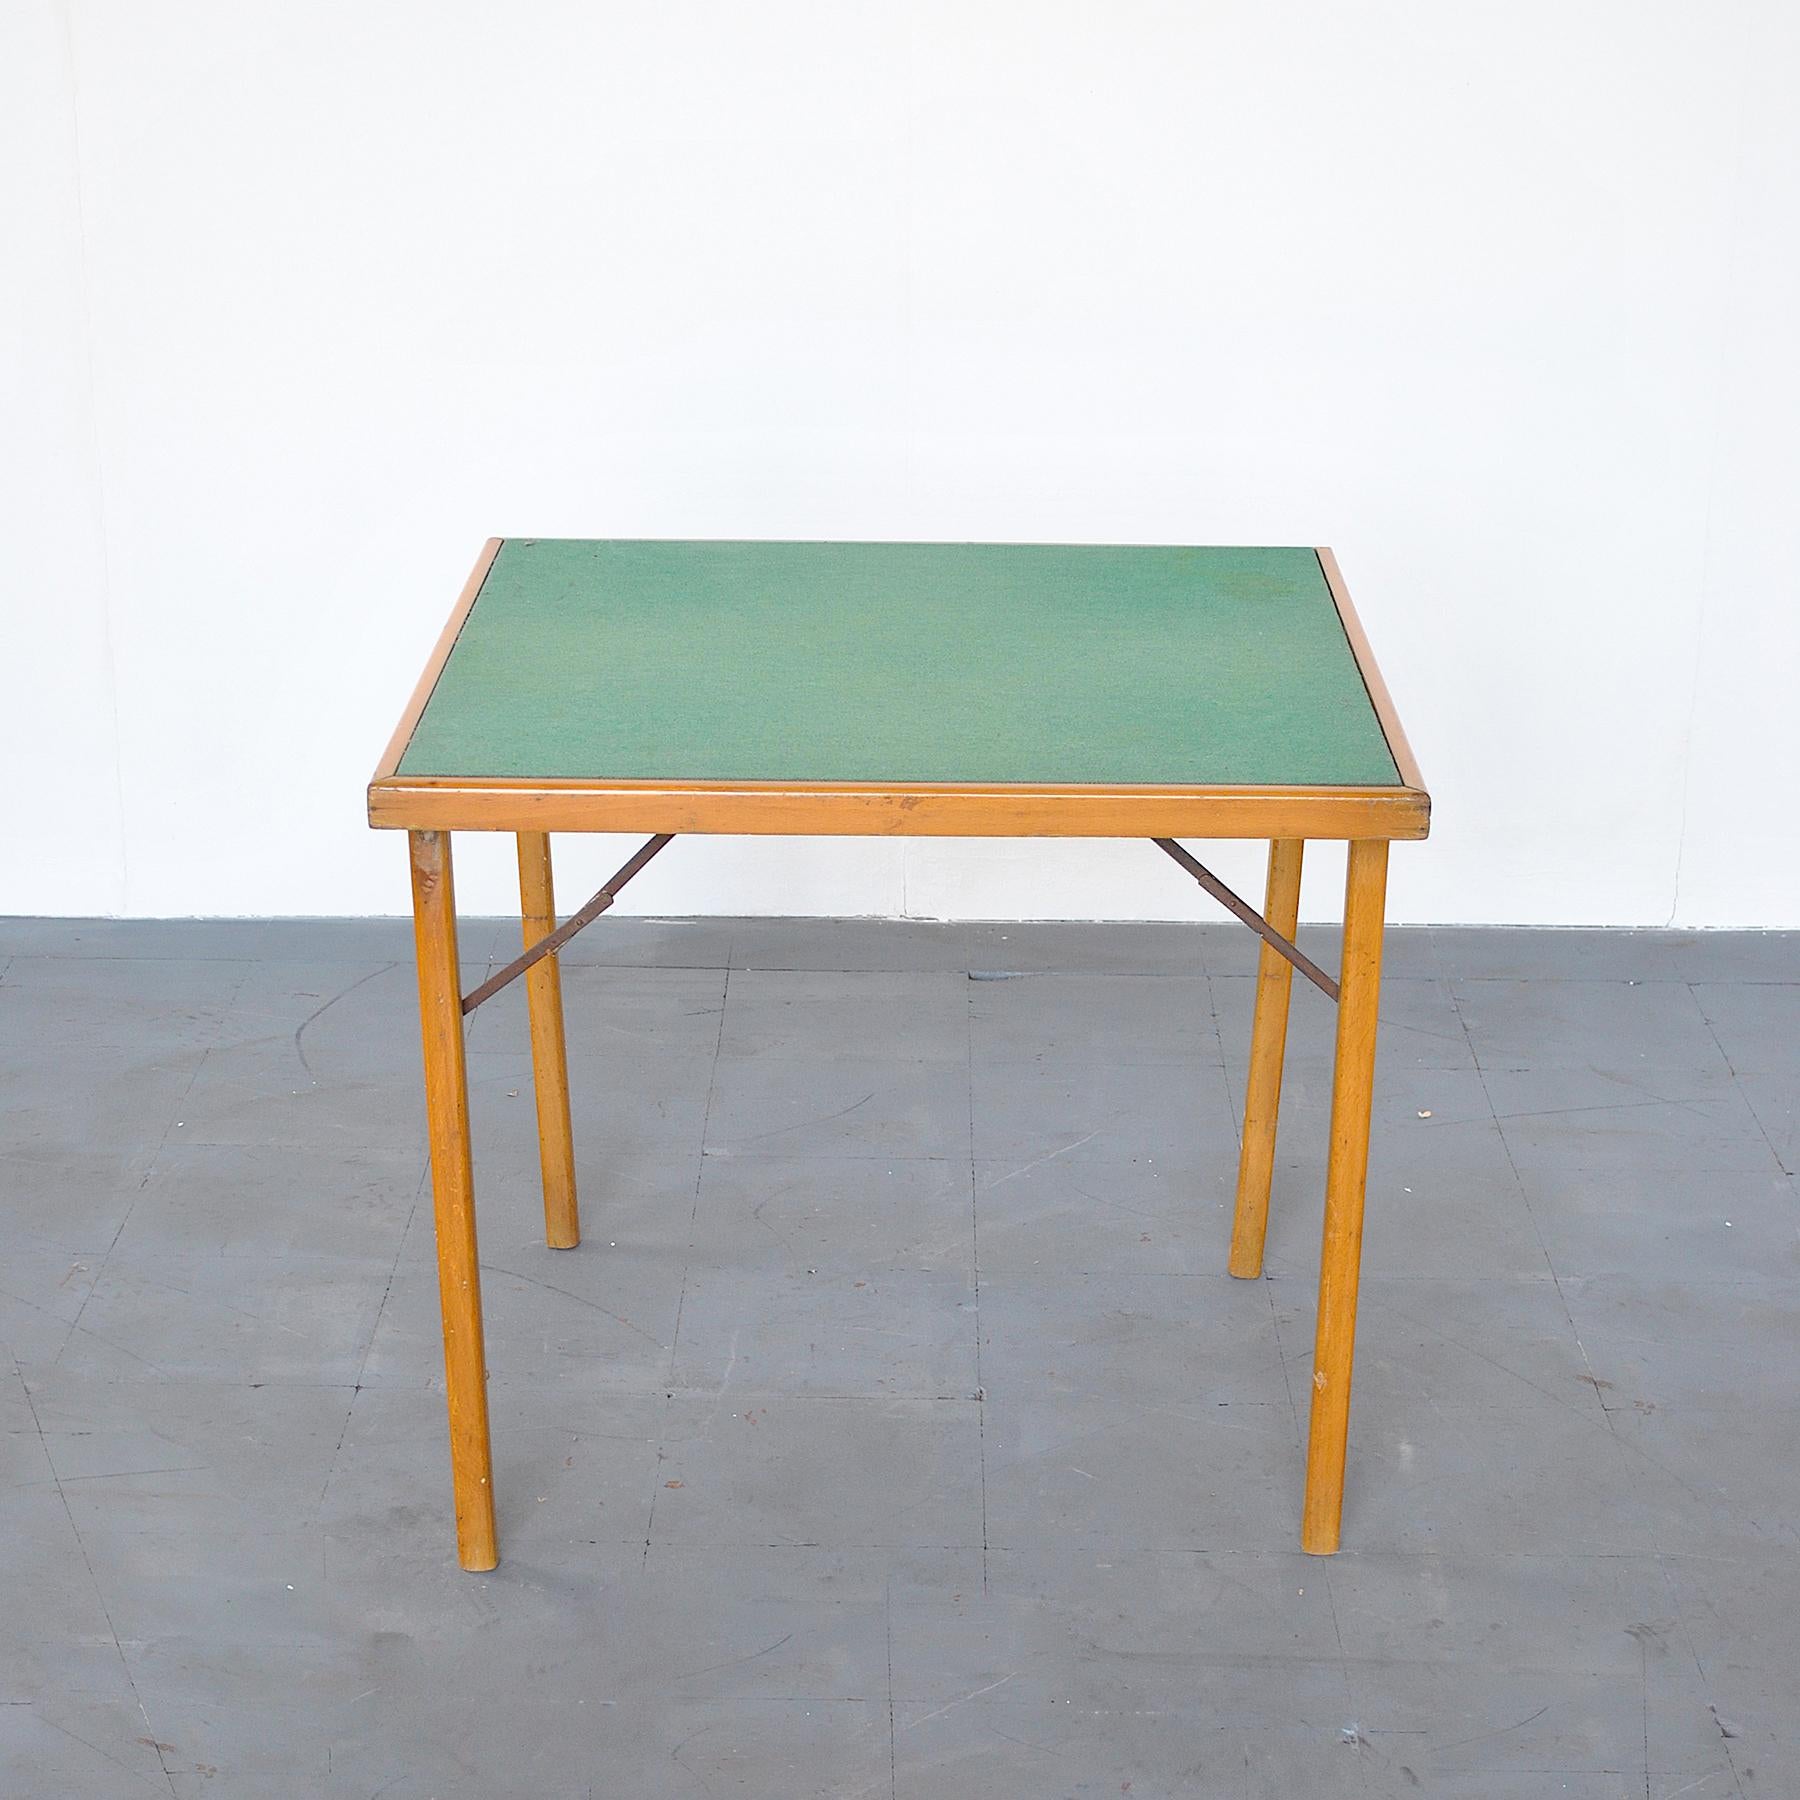 Nahaufnahme Spieltisch aus Holz mit grünem Tuch auf dem Boden.